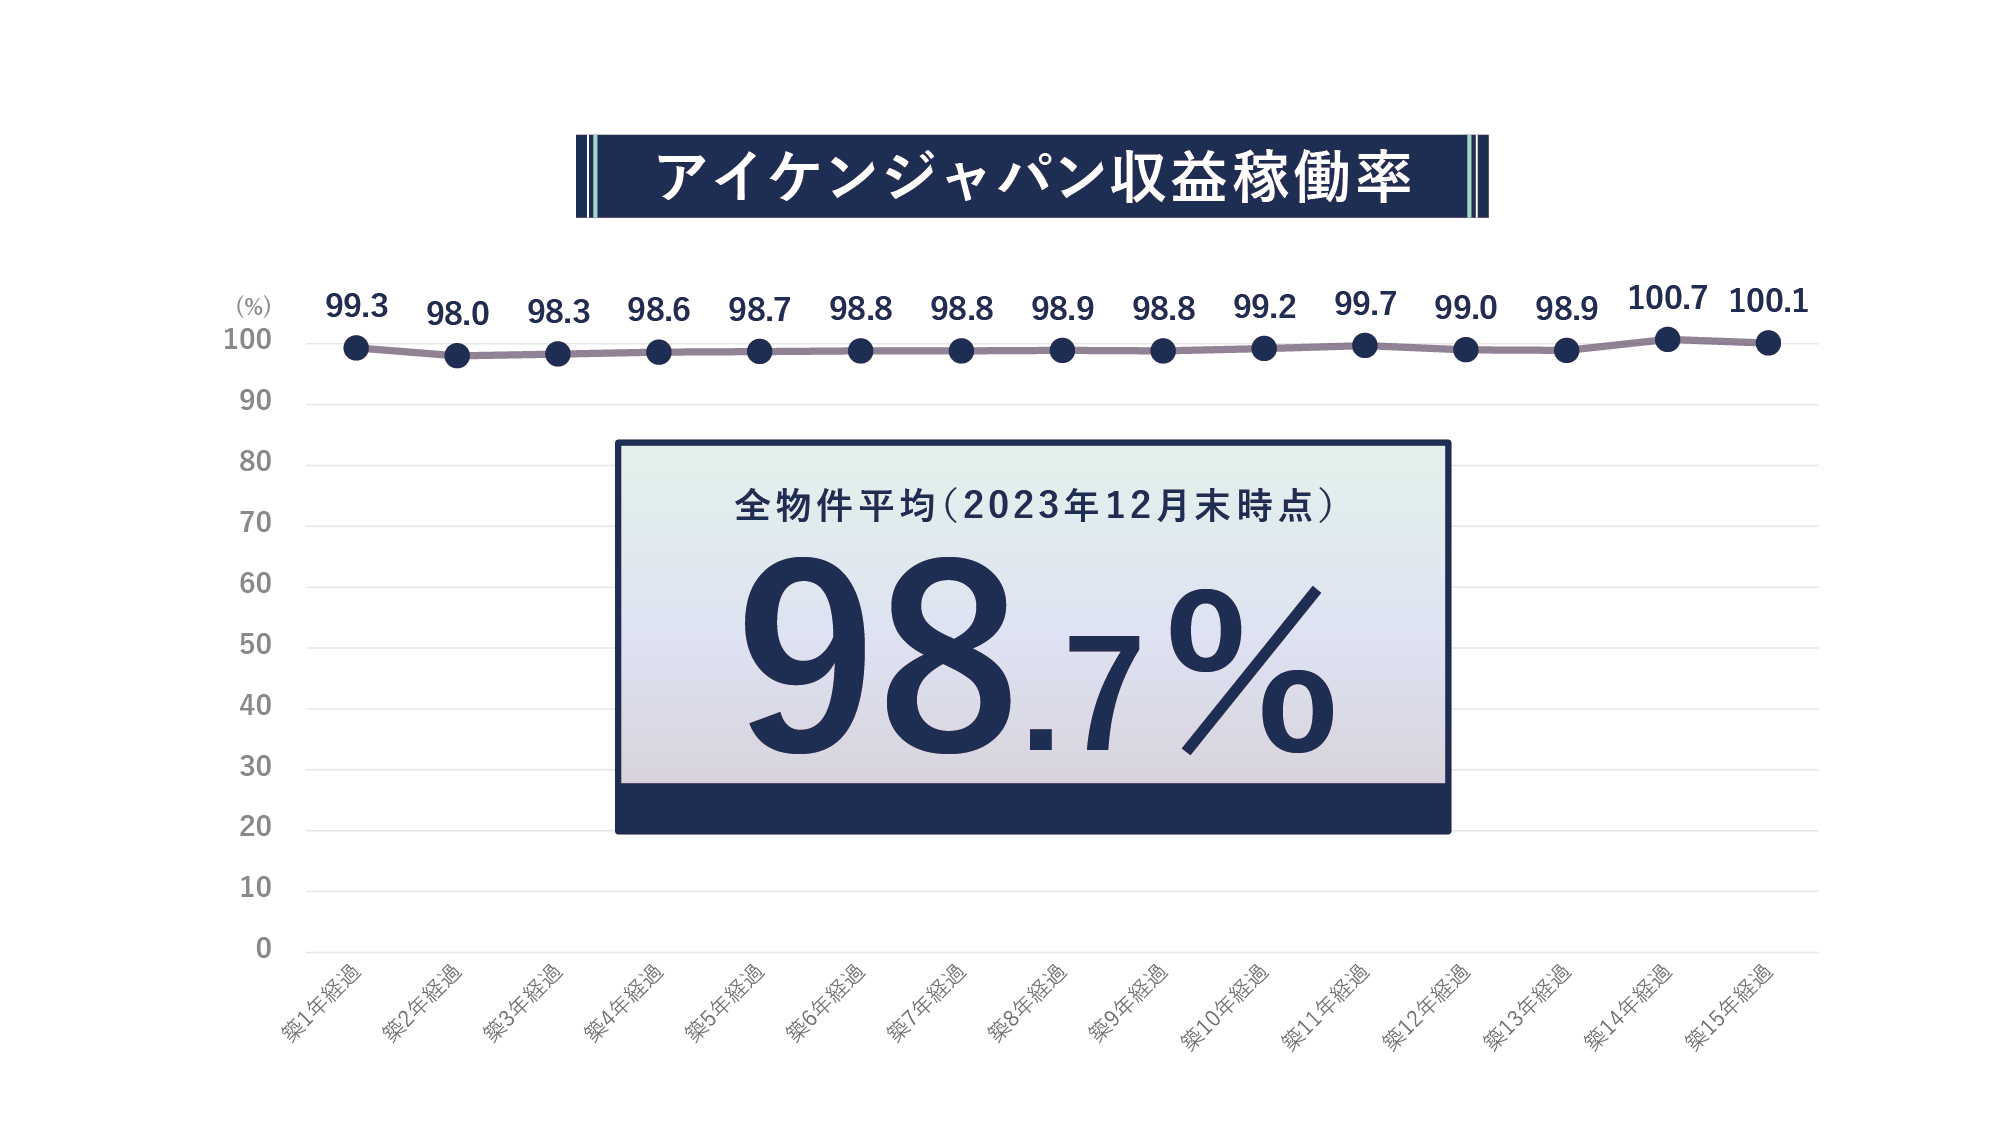 アイケンジャパン収益稼働率のグラフ